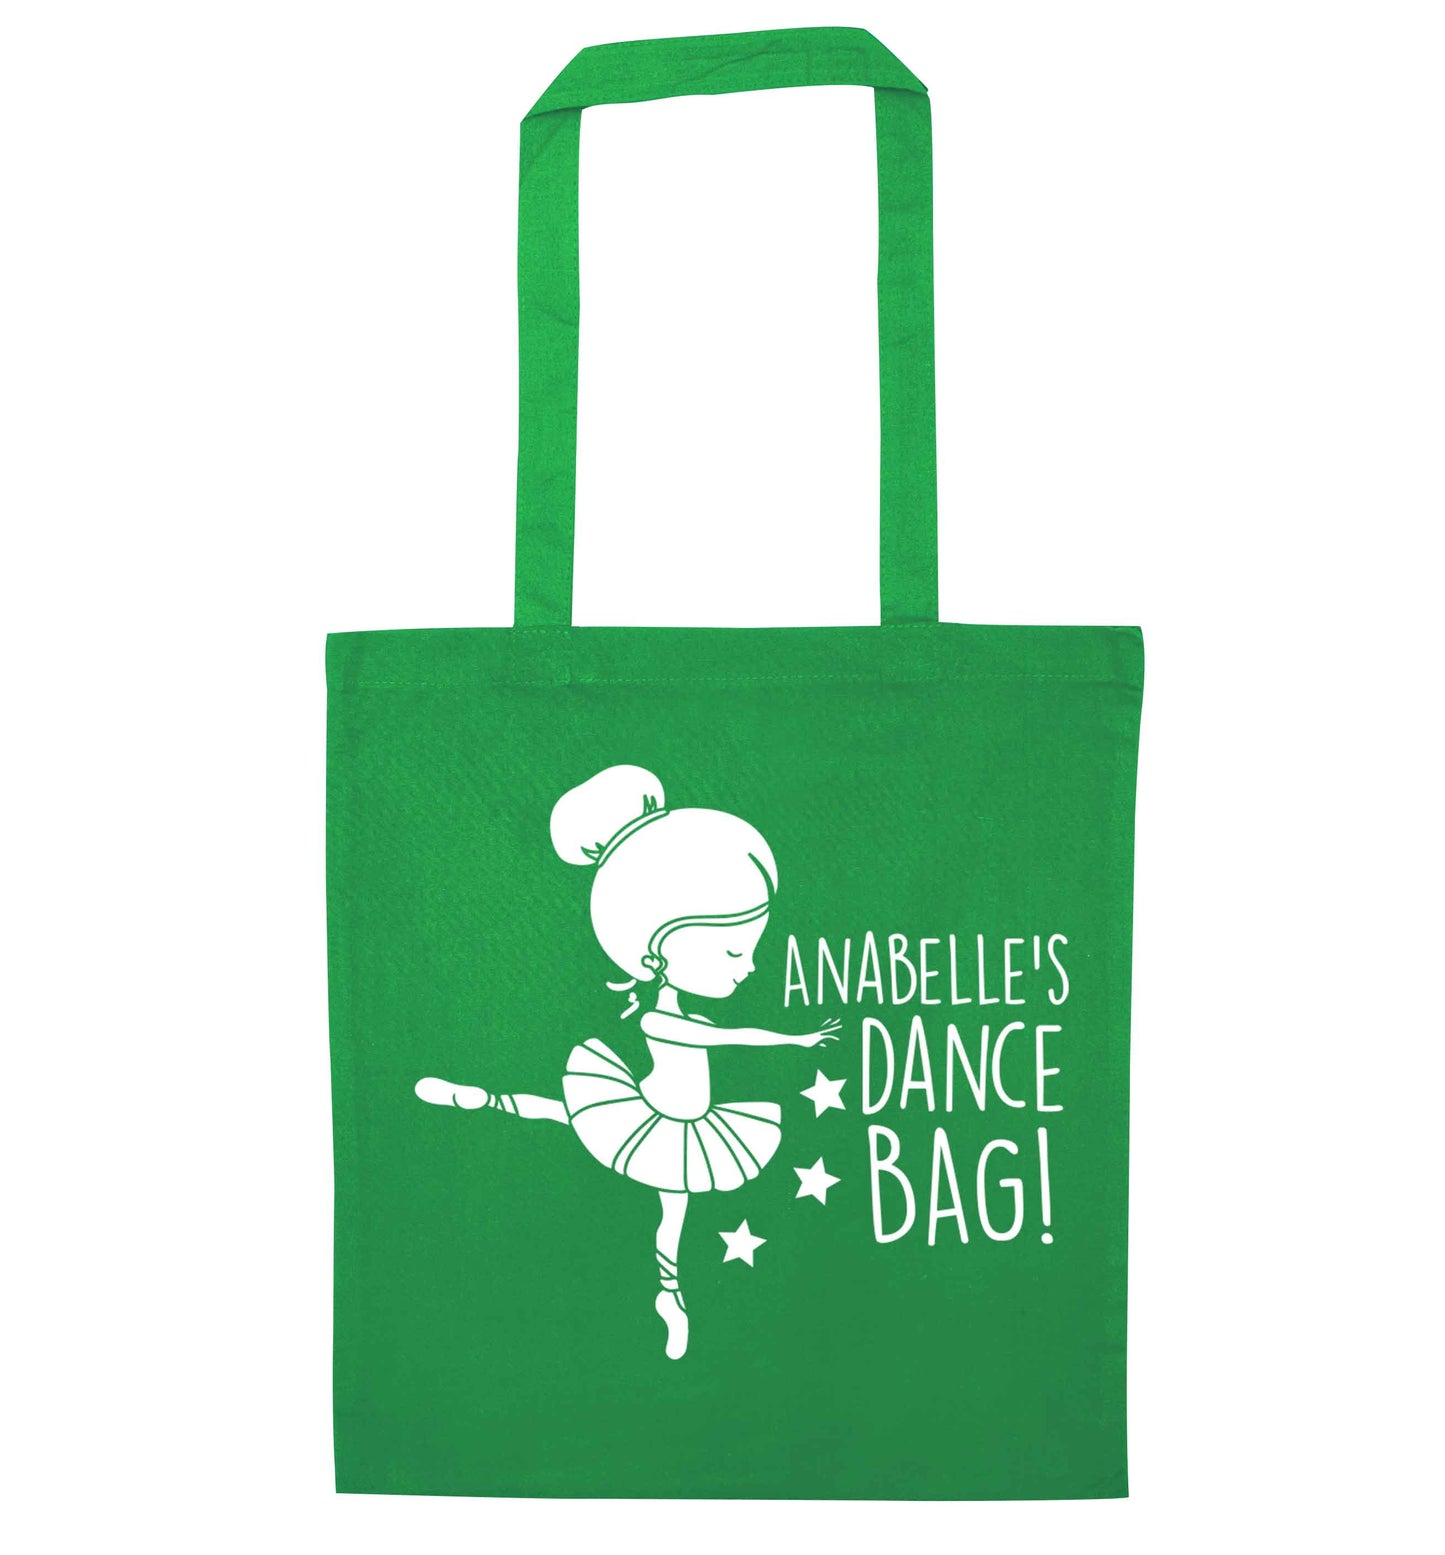 Personalised Ballet Dance Bag green tote bag